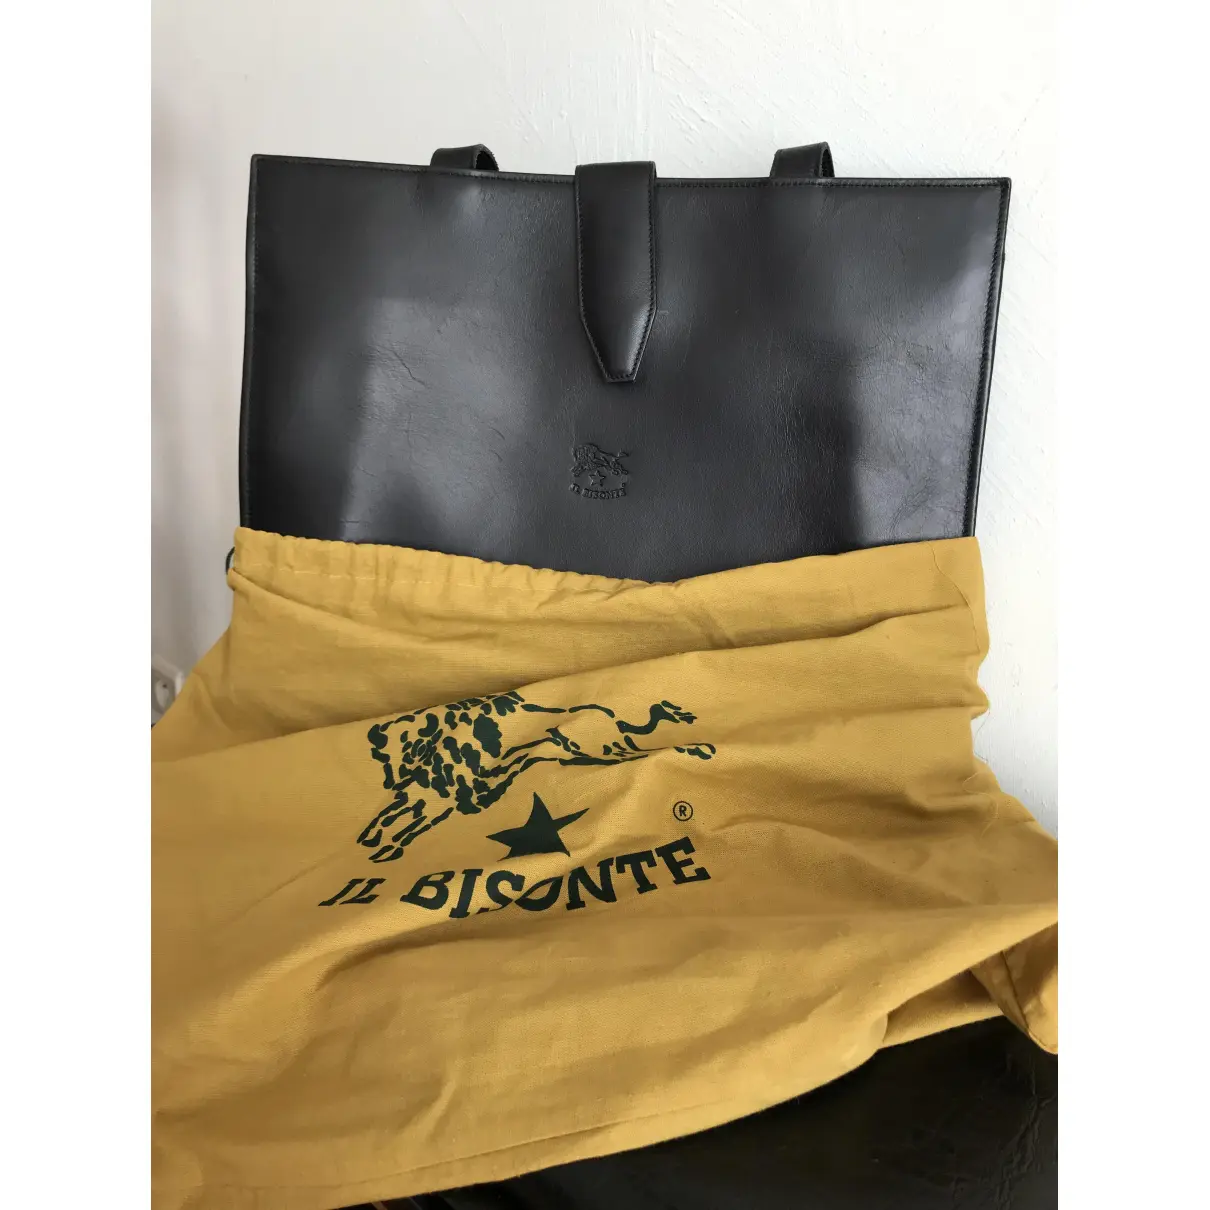 Buy Il Bisonte Leather handbag online